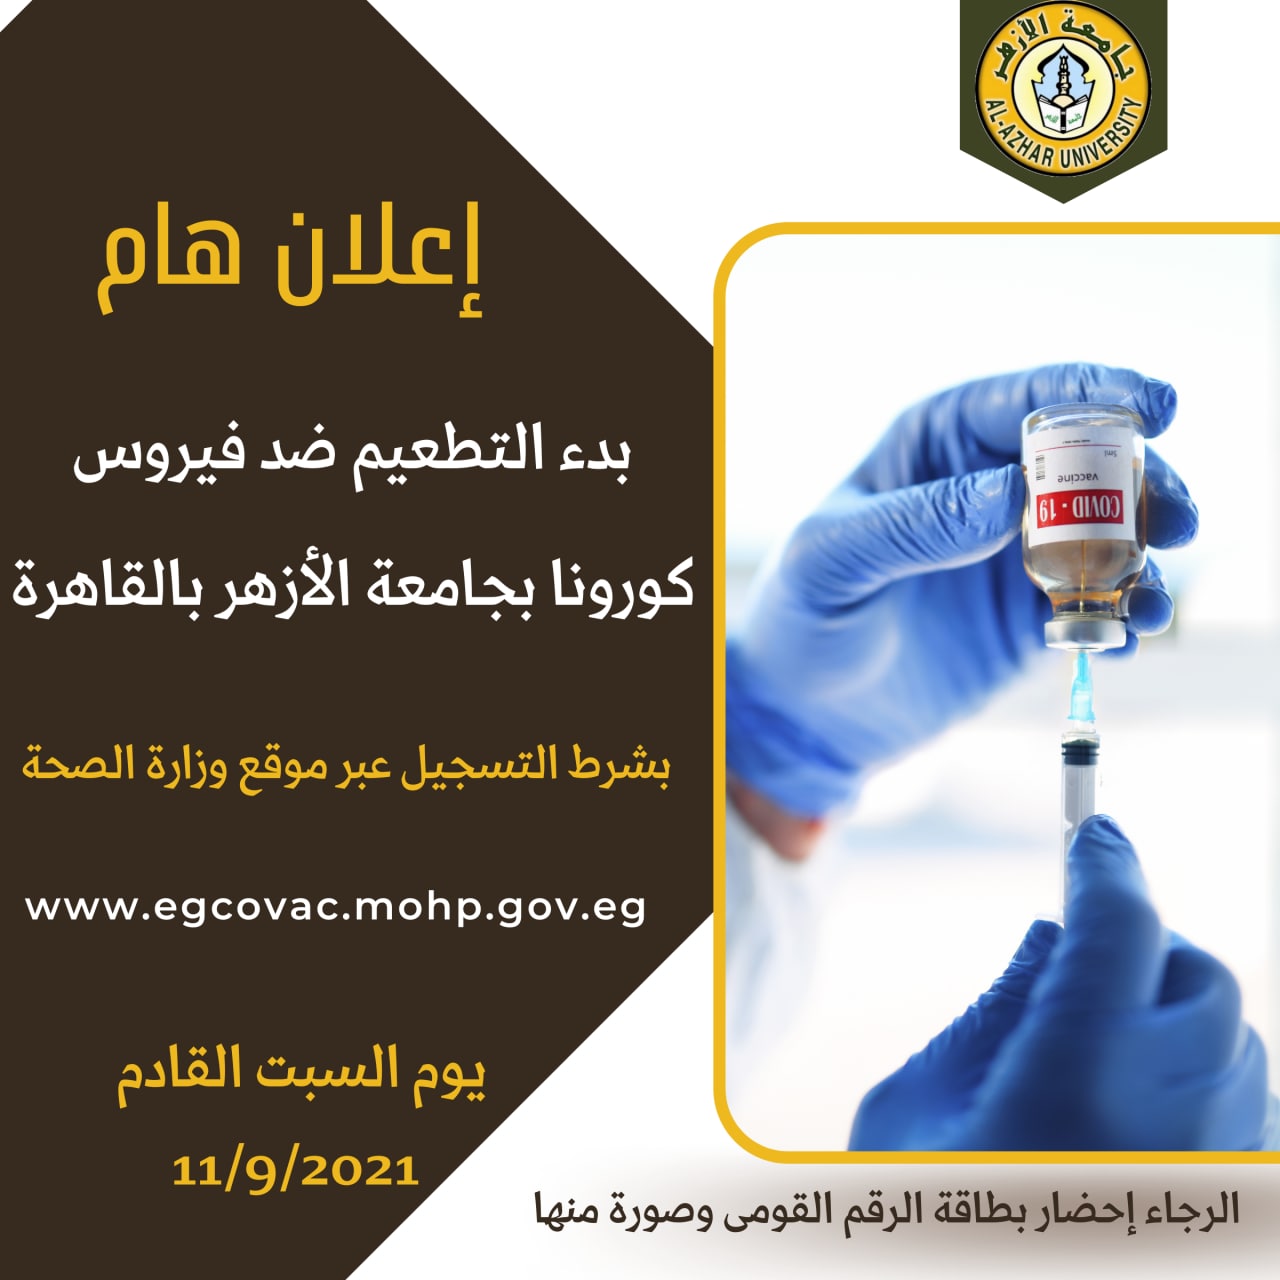 التطعيم ضد فيروس كورونا بجامعة الأزهر بالقاهرة السبت القادم